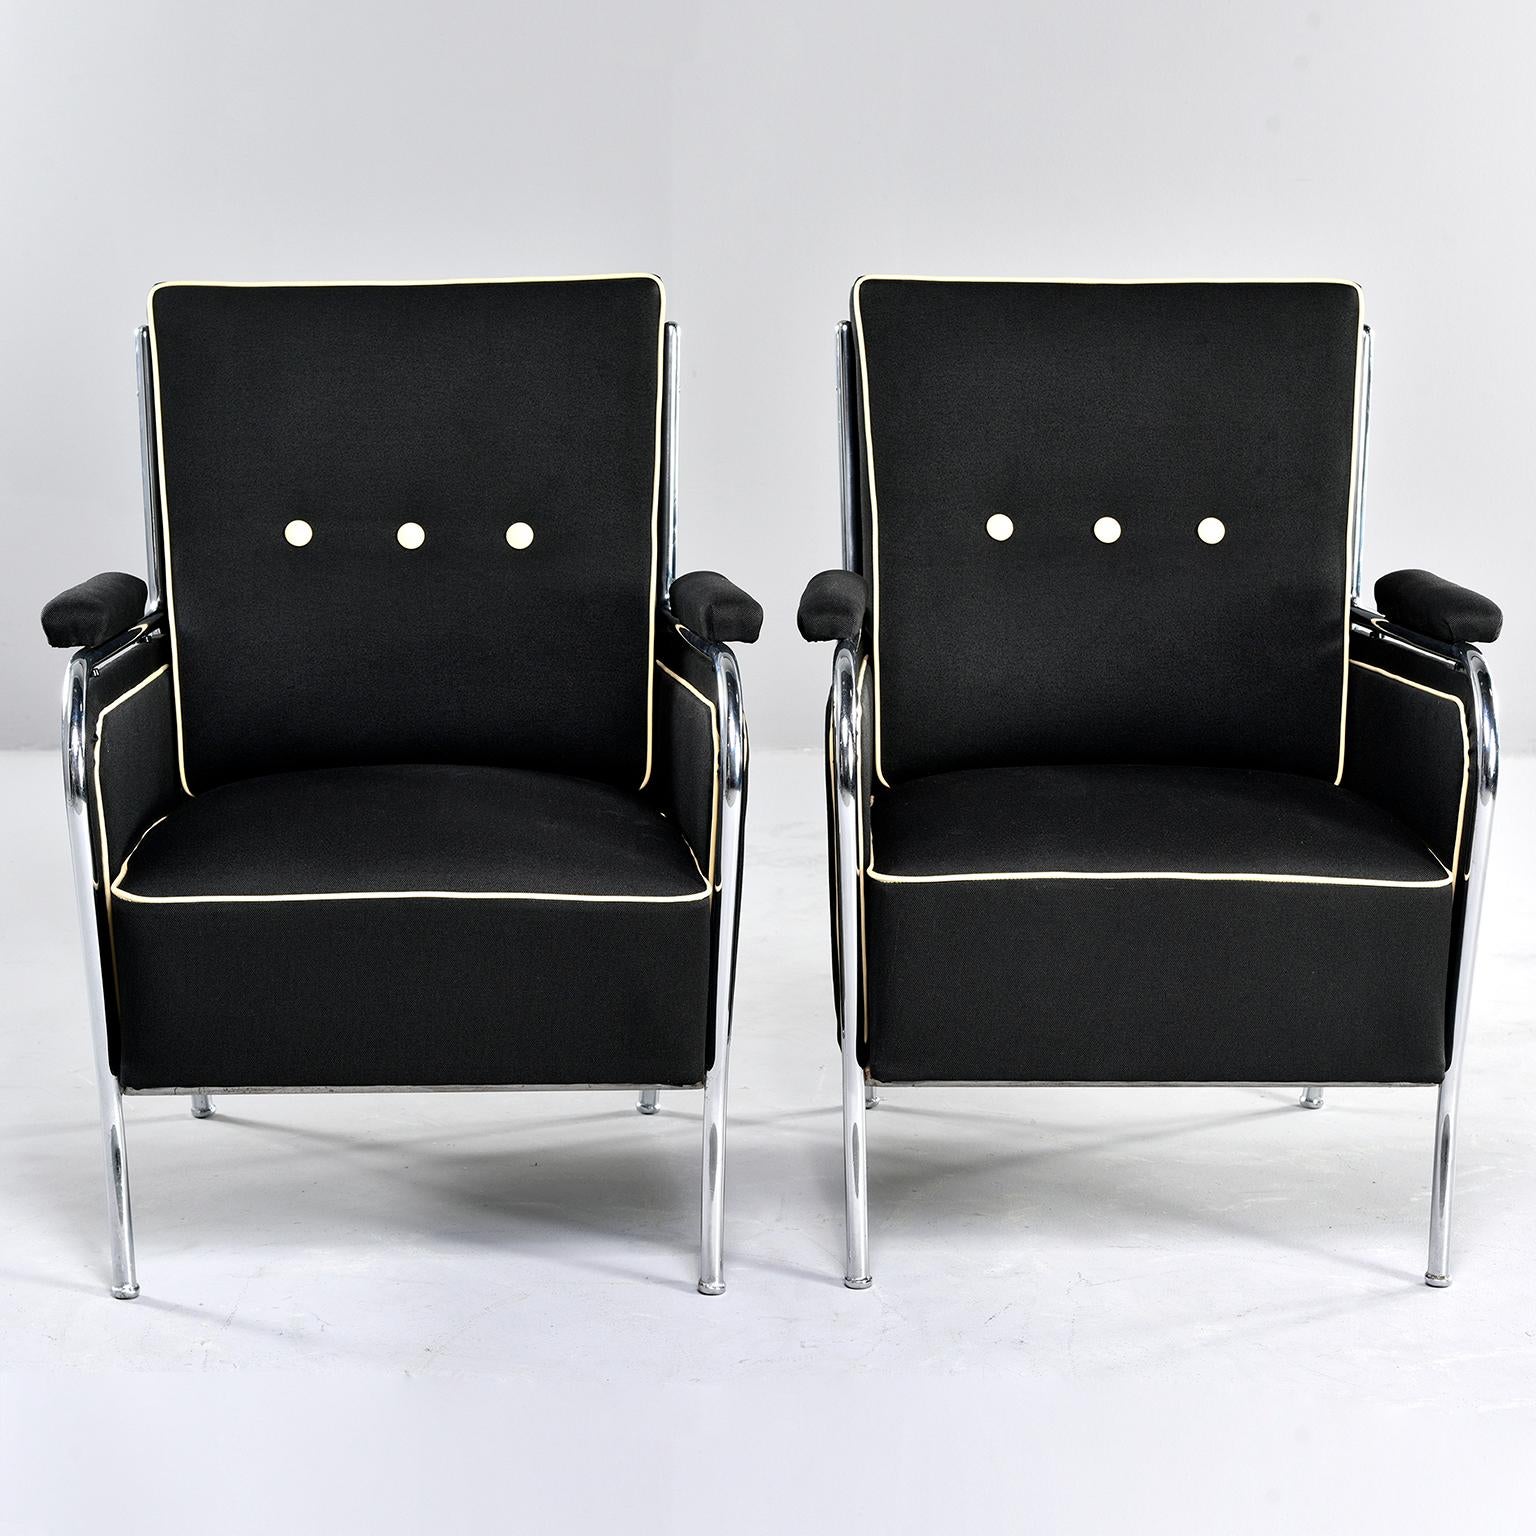 Paire de fauteuils club français à armature chromée, nouvellement tapissés, vers les années 1940. Le tissu noir en coton mélangé a une texture floue et les chaises sont garnies d'une bordure et de boutons en cuir ivoire contrastant. Mesures : Les